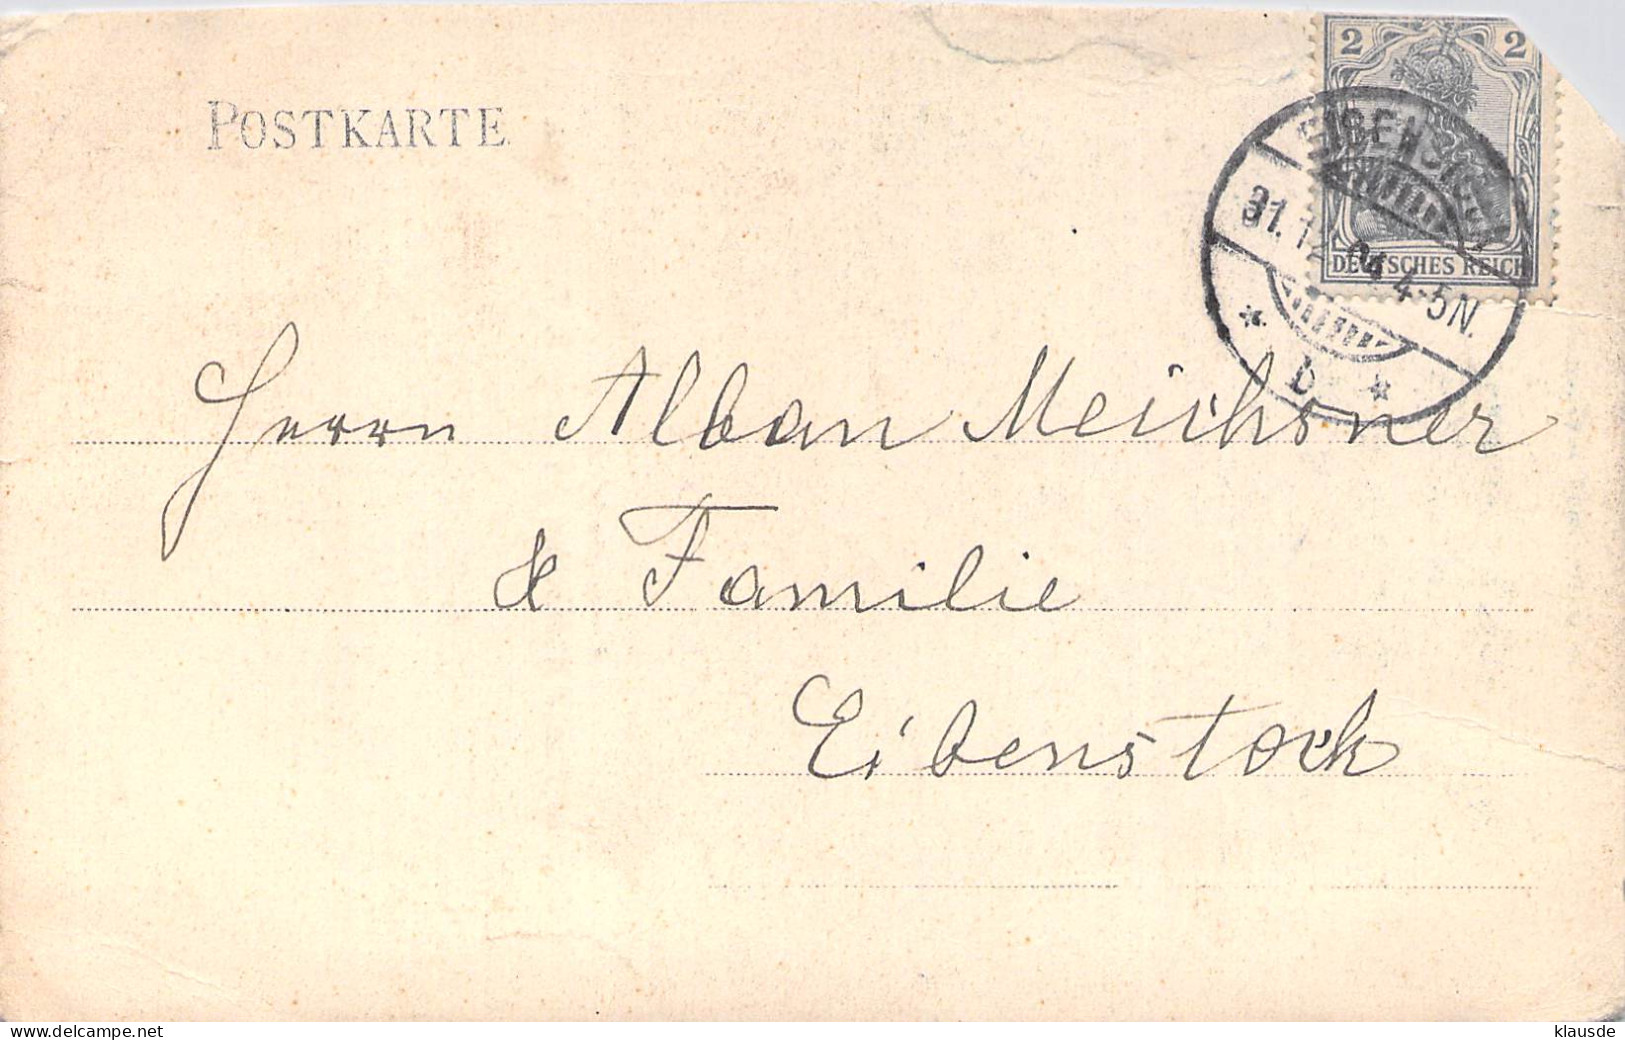 Wildenthal Erzgeb. Herrenhaus 1904 Pension Josephine Meichsner - Eibenstock